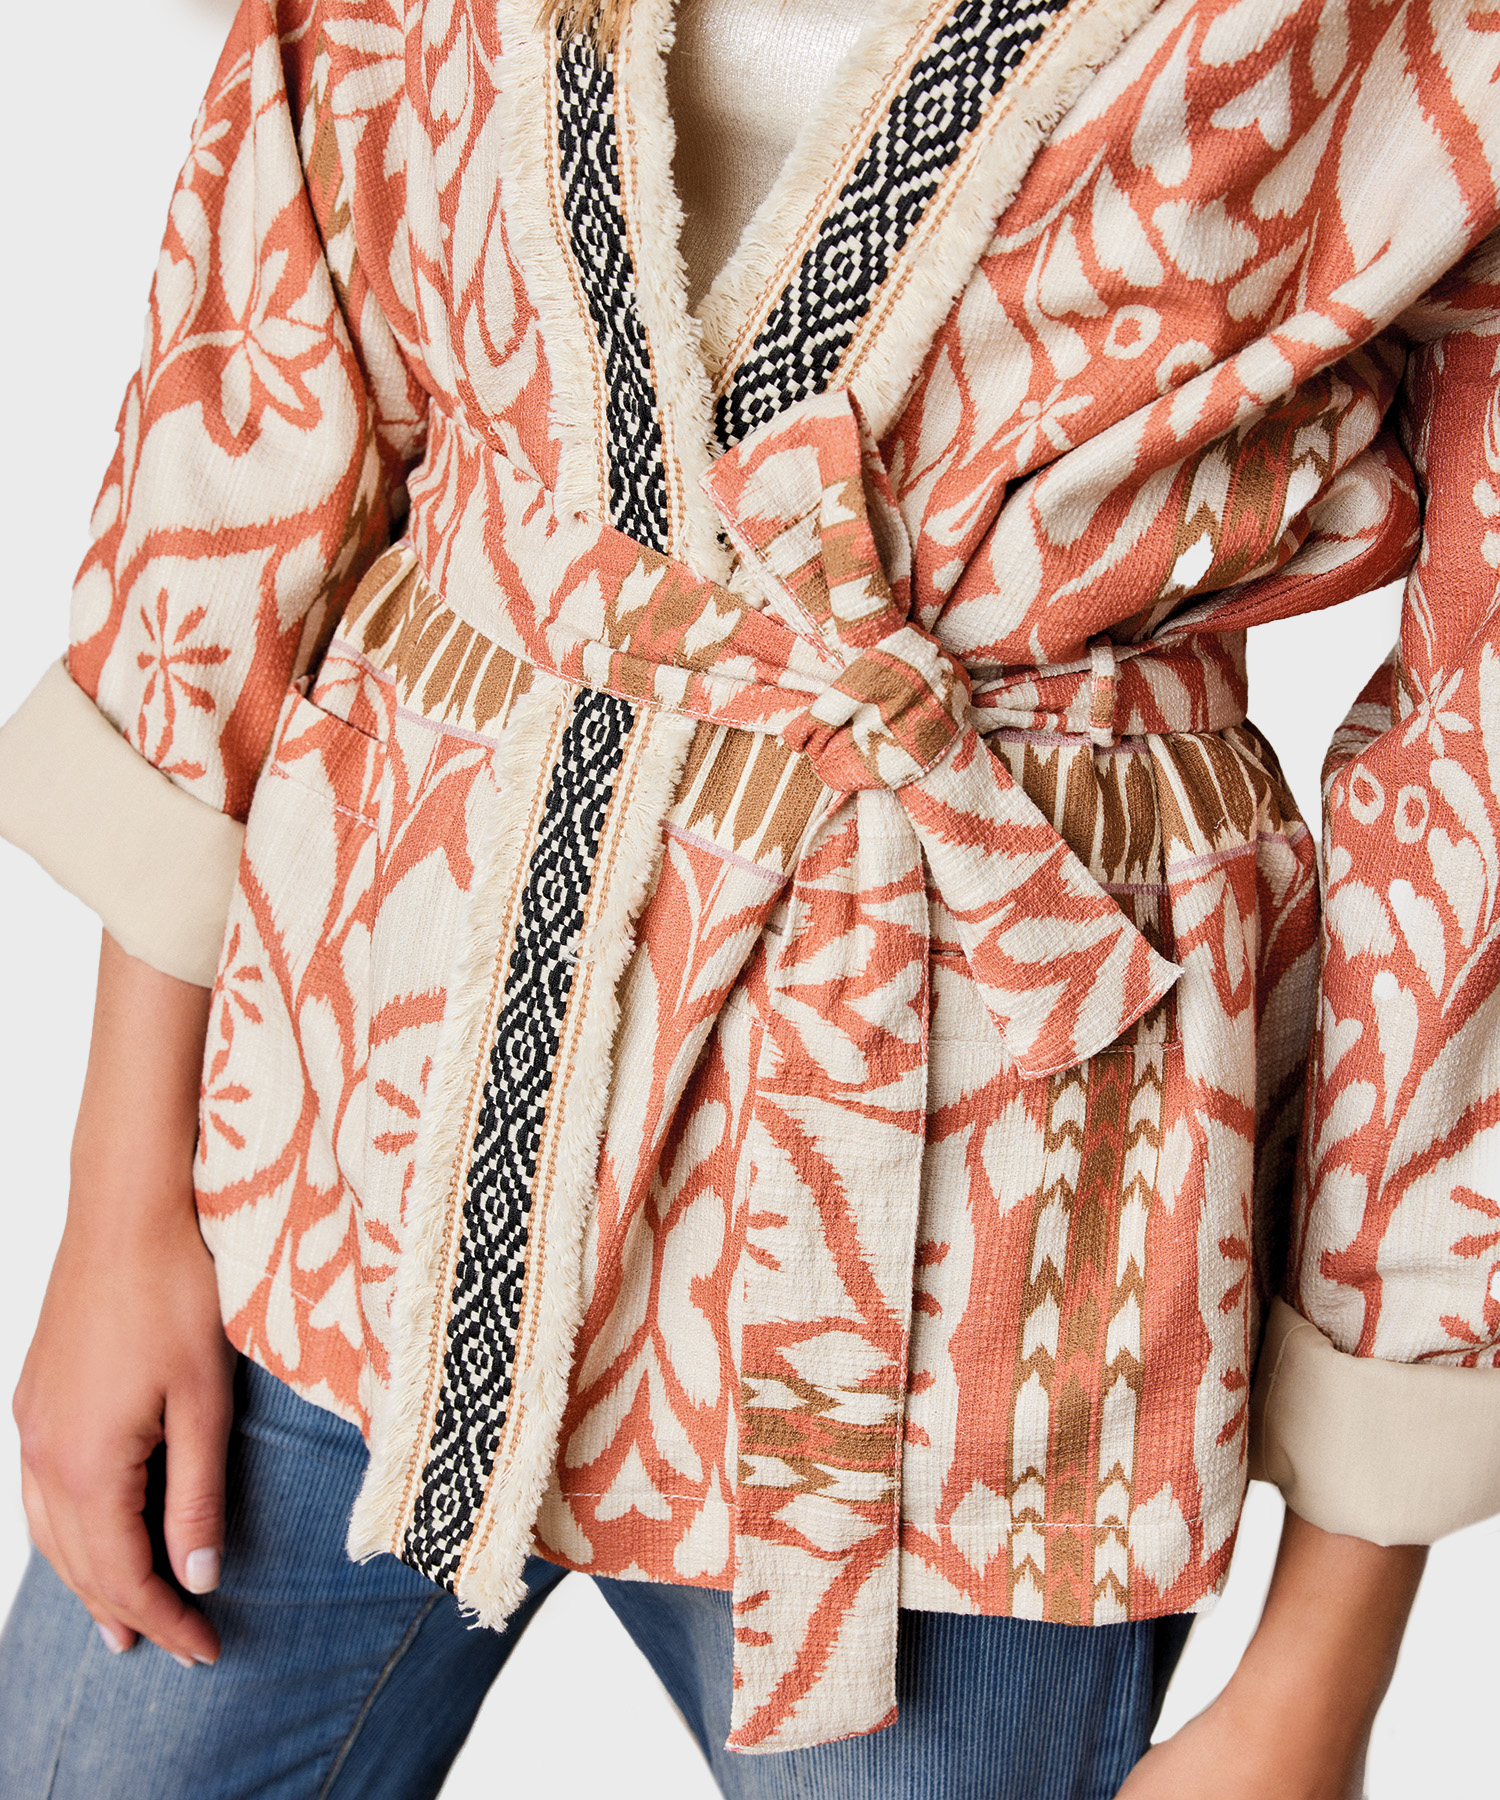 Helder op Decimale verzameling Summum kimono blazer inca | BeOne